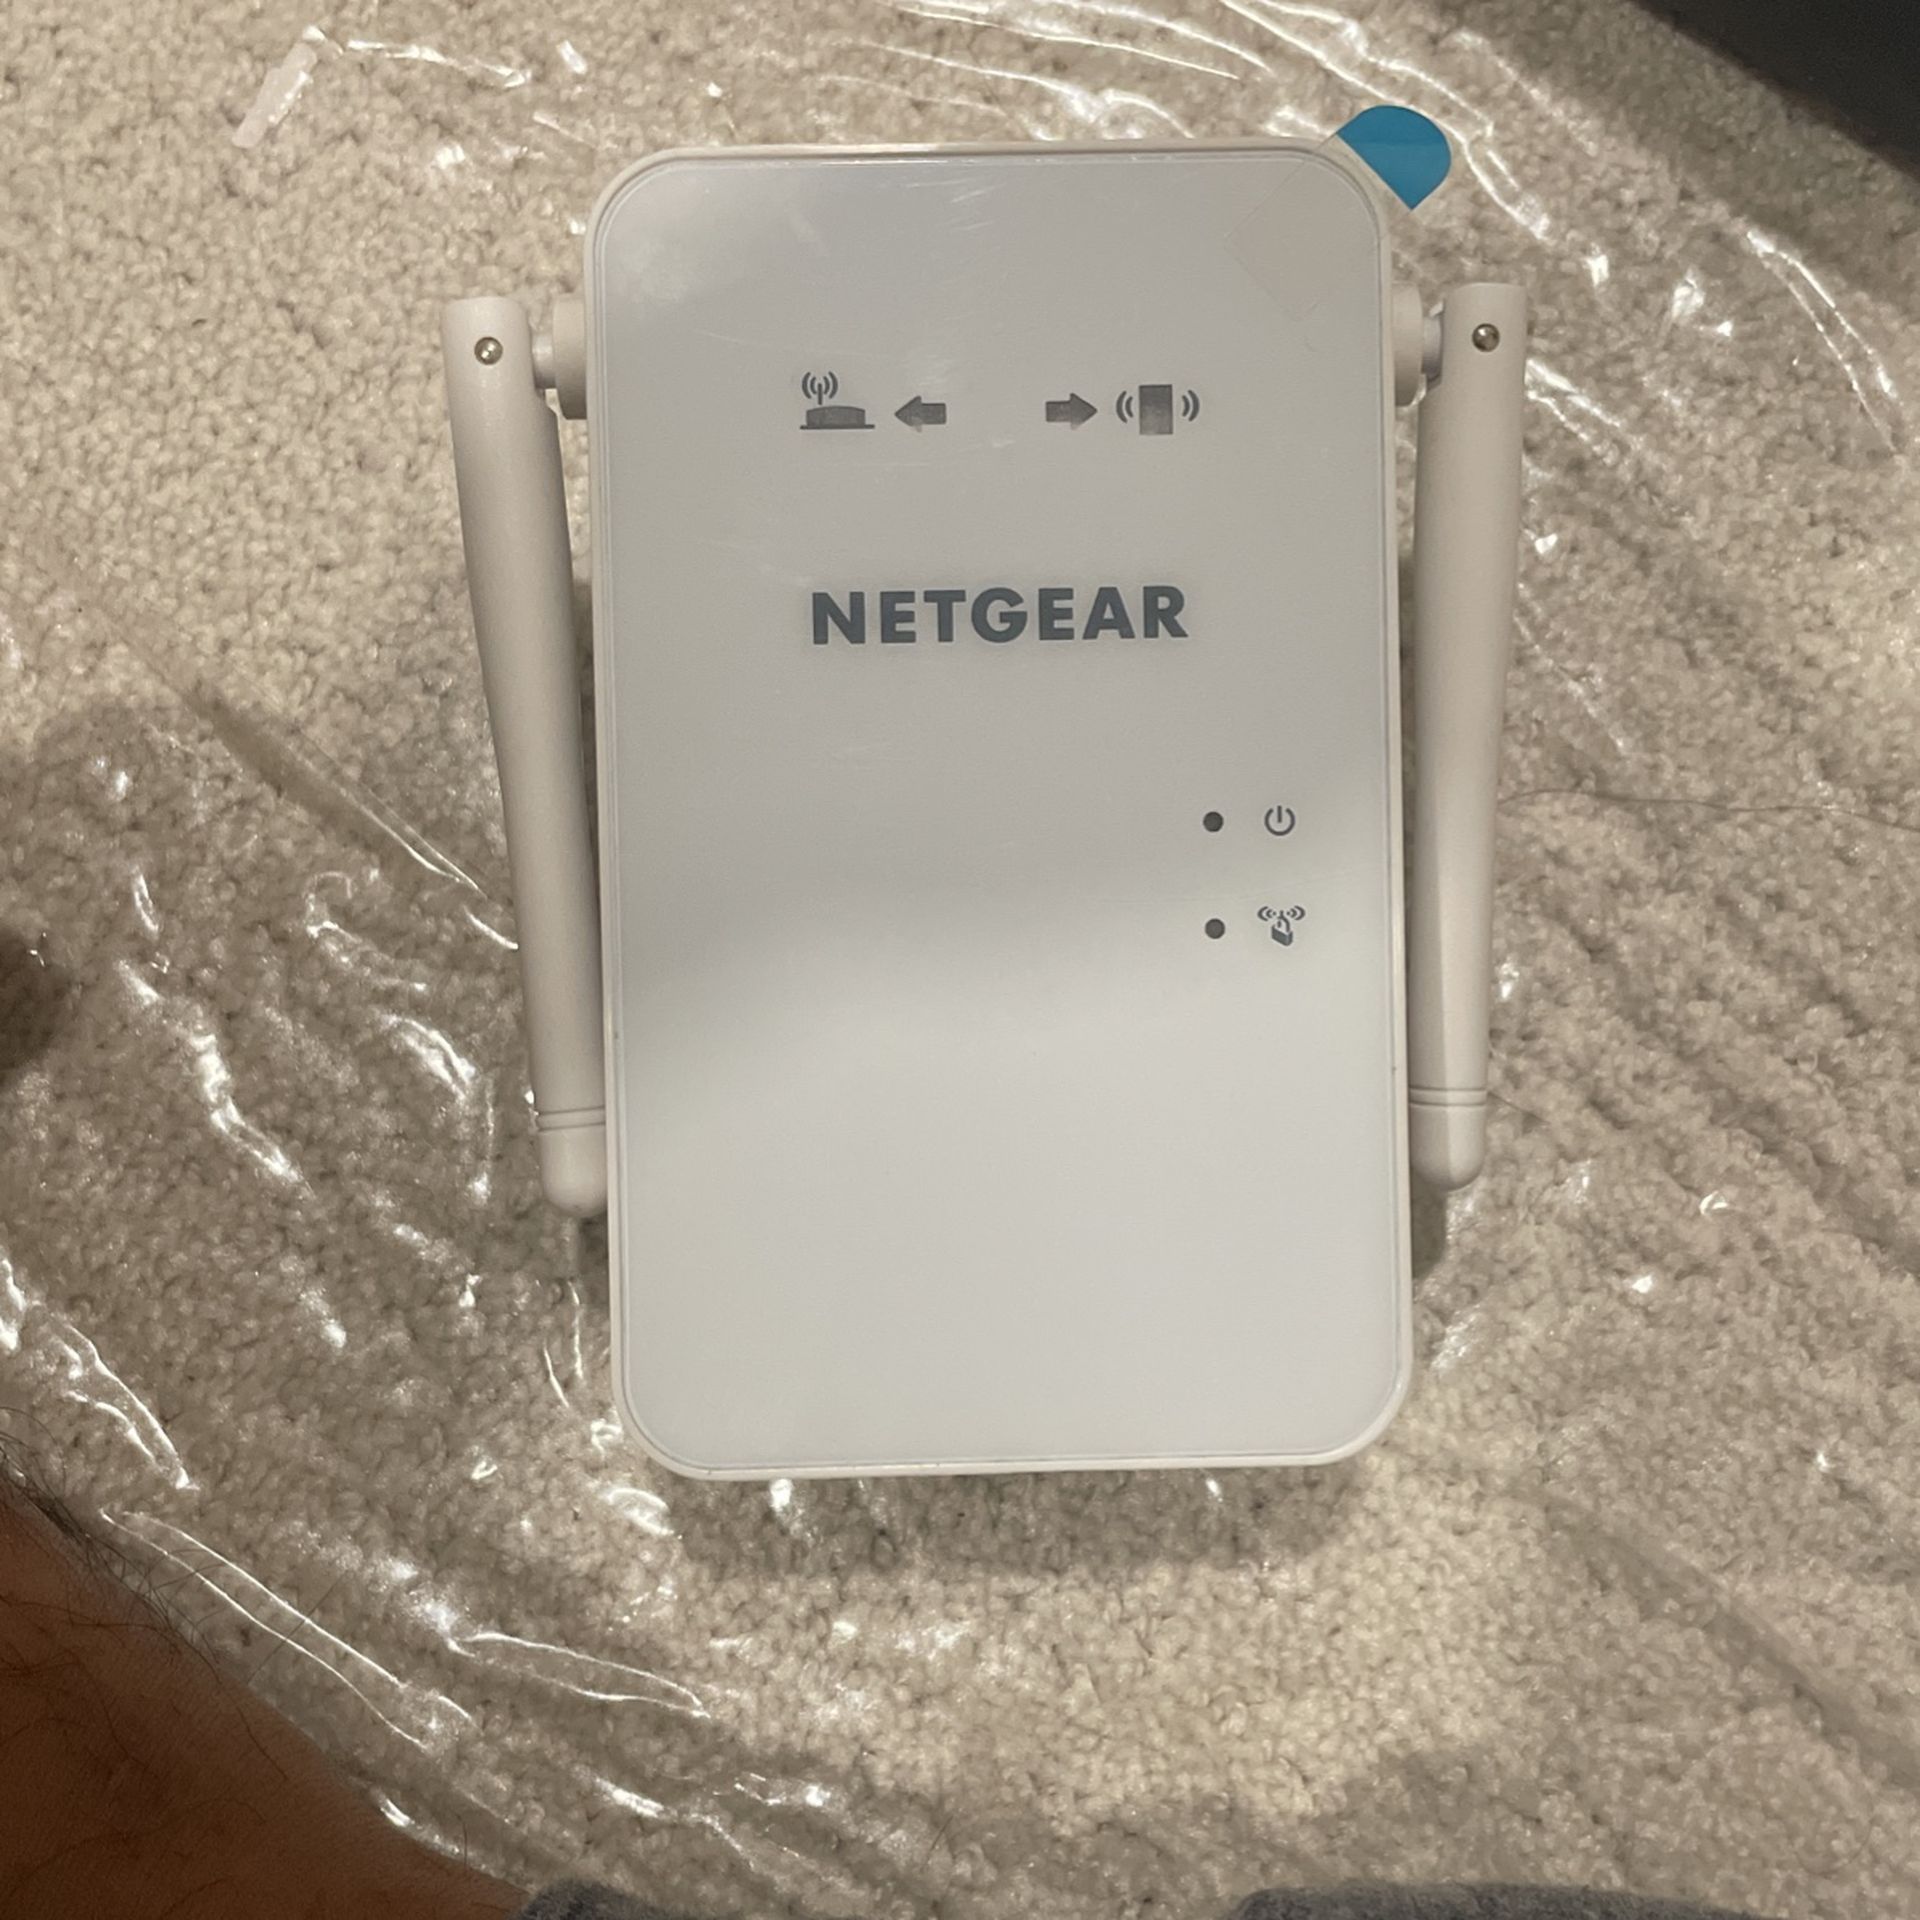 Net gear WiFi Range Extender 